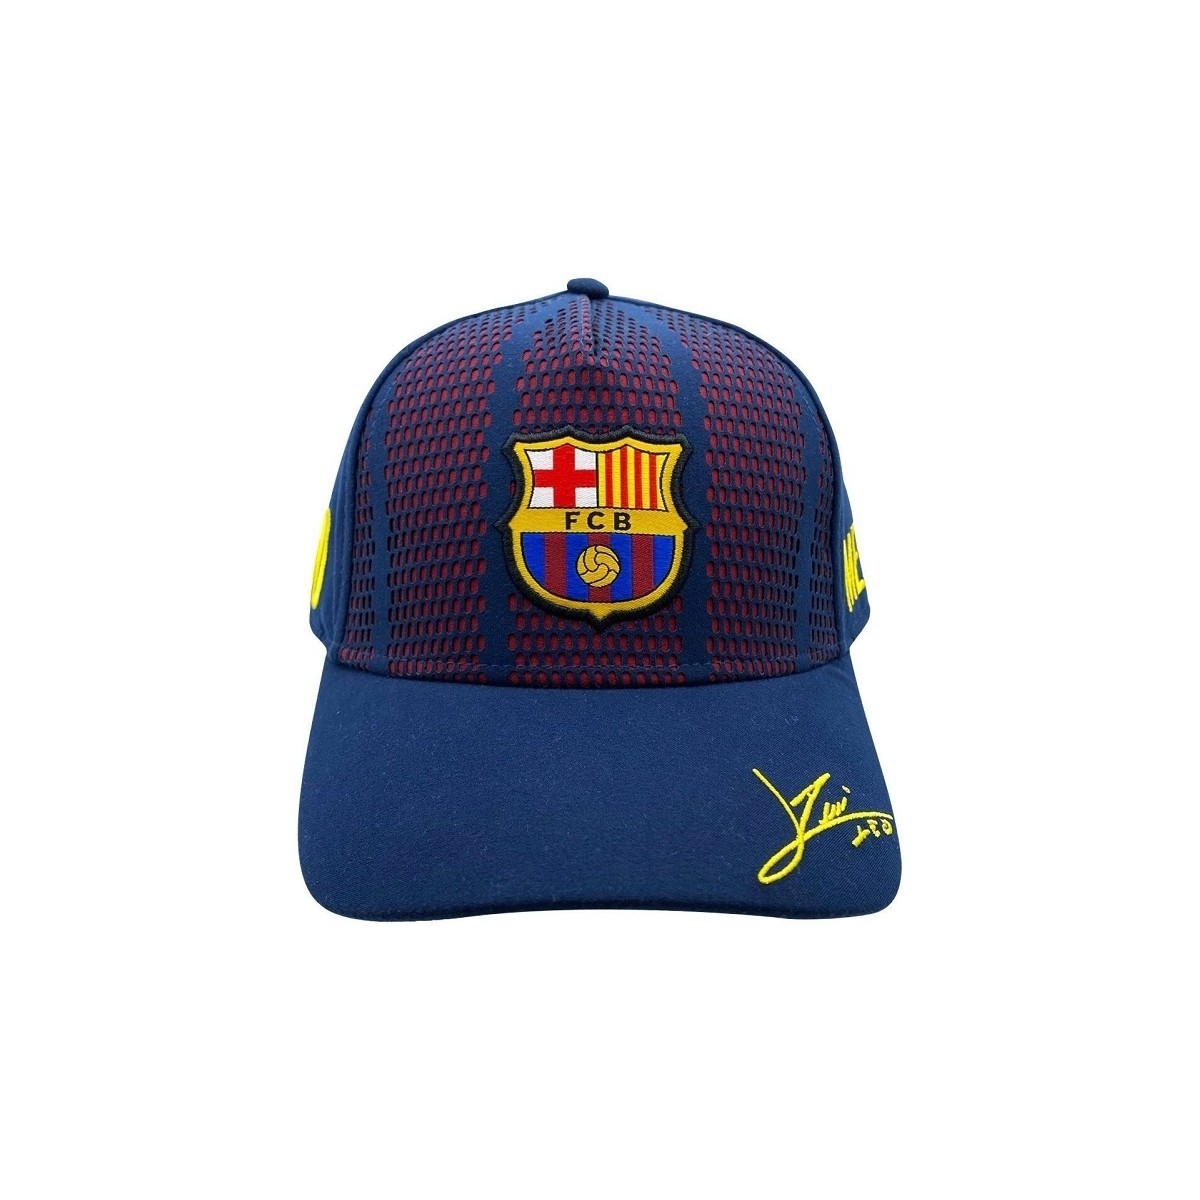 Αξεσουάρ Αγόρι Κασκέτα Fc Barcelona CAP 10 Μπλέ